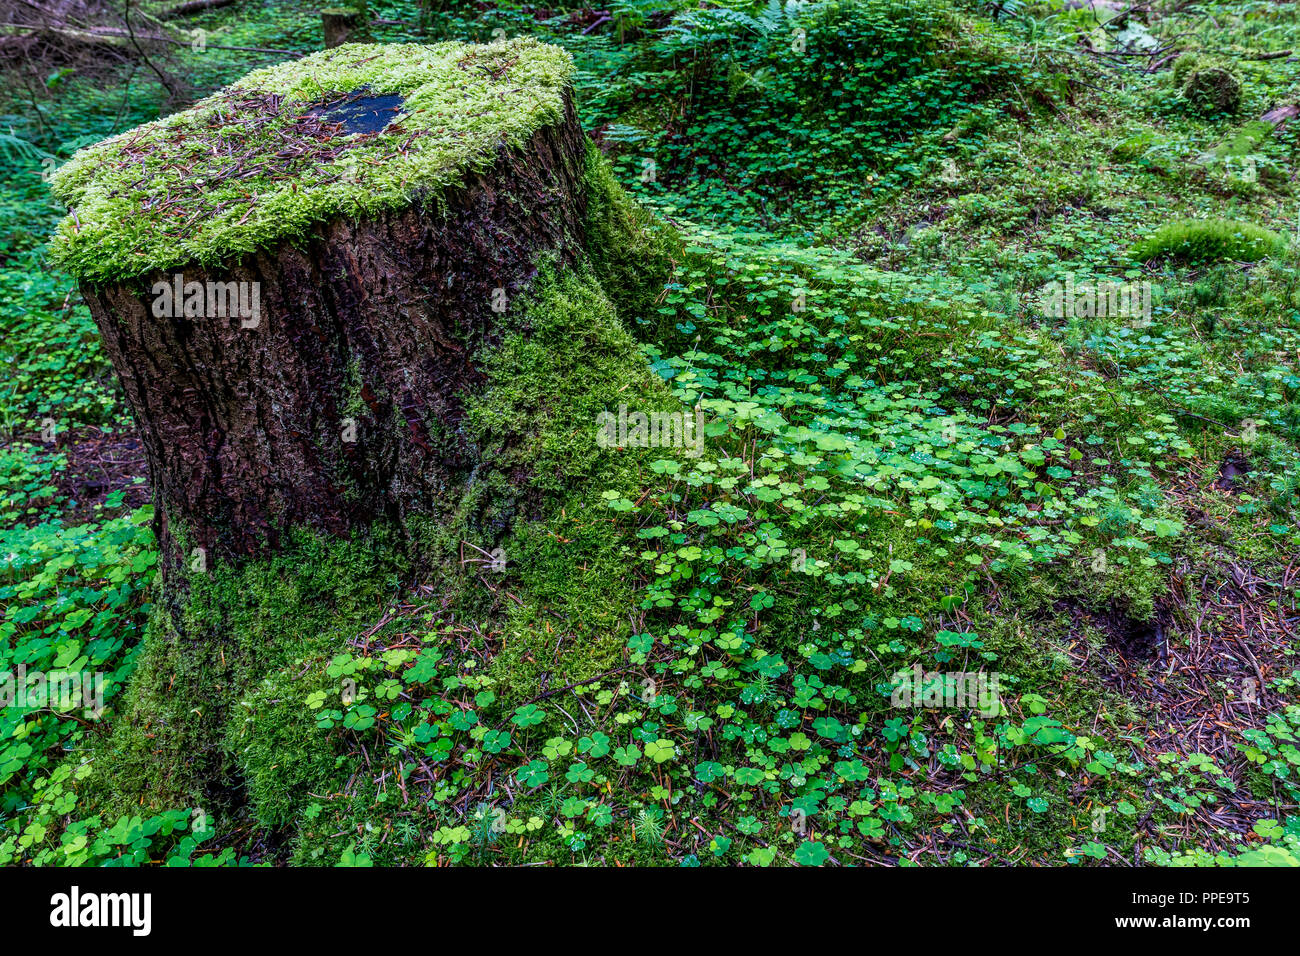 L'oxalide sur un sol forestier. Banque D'Images